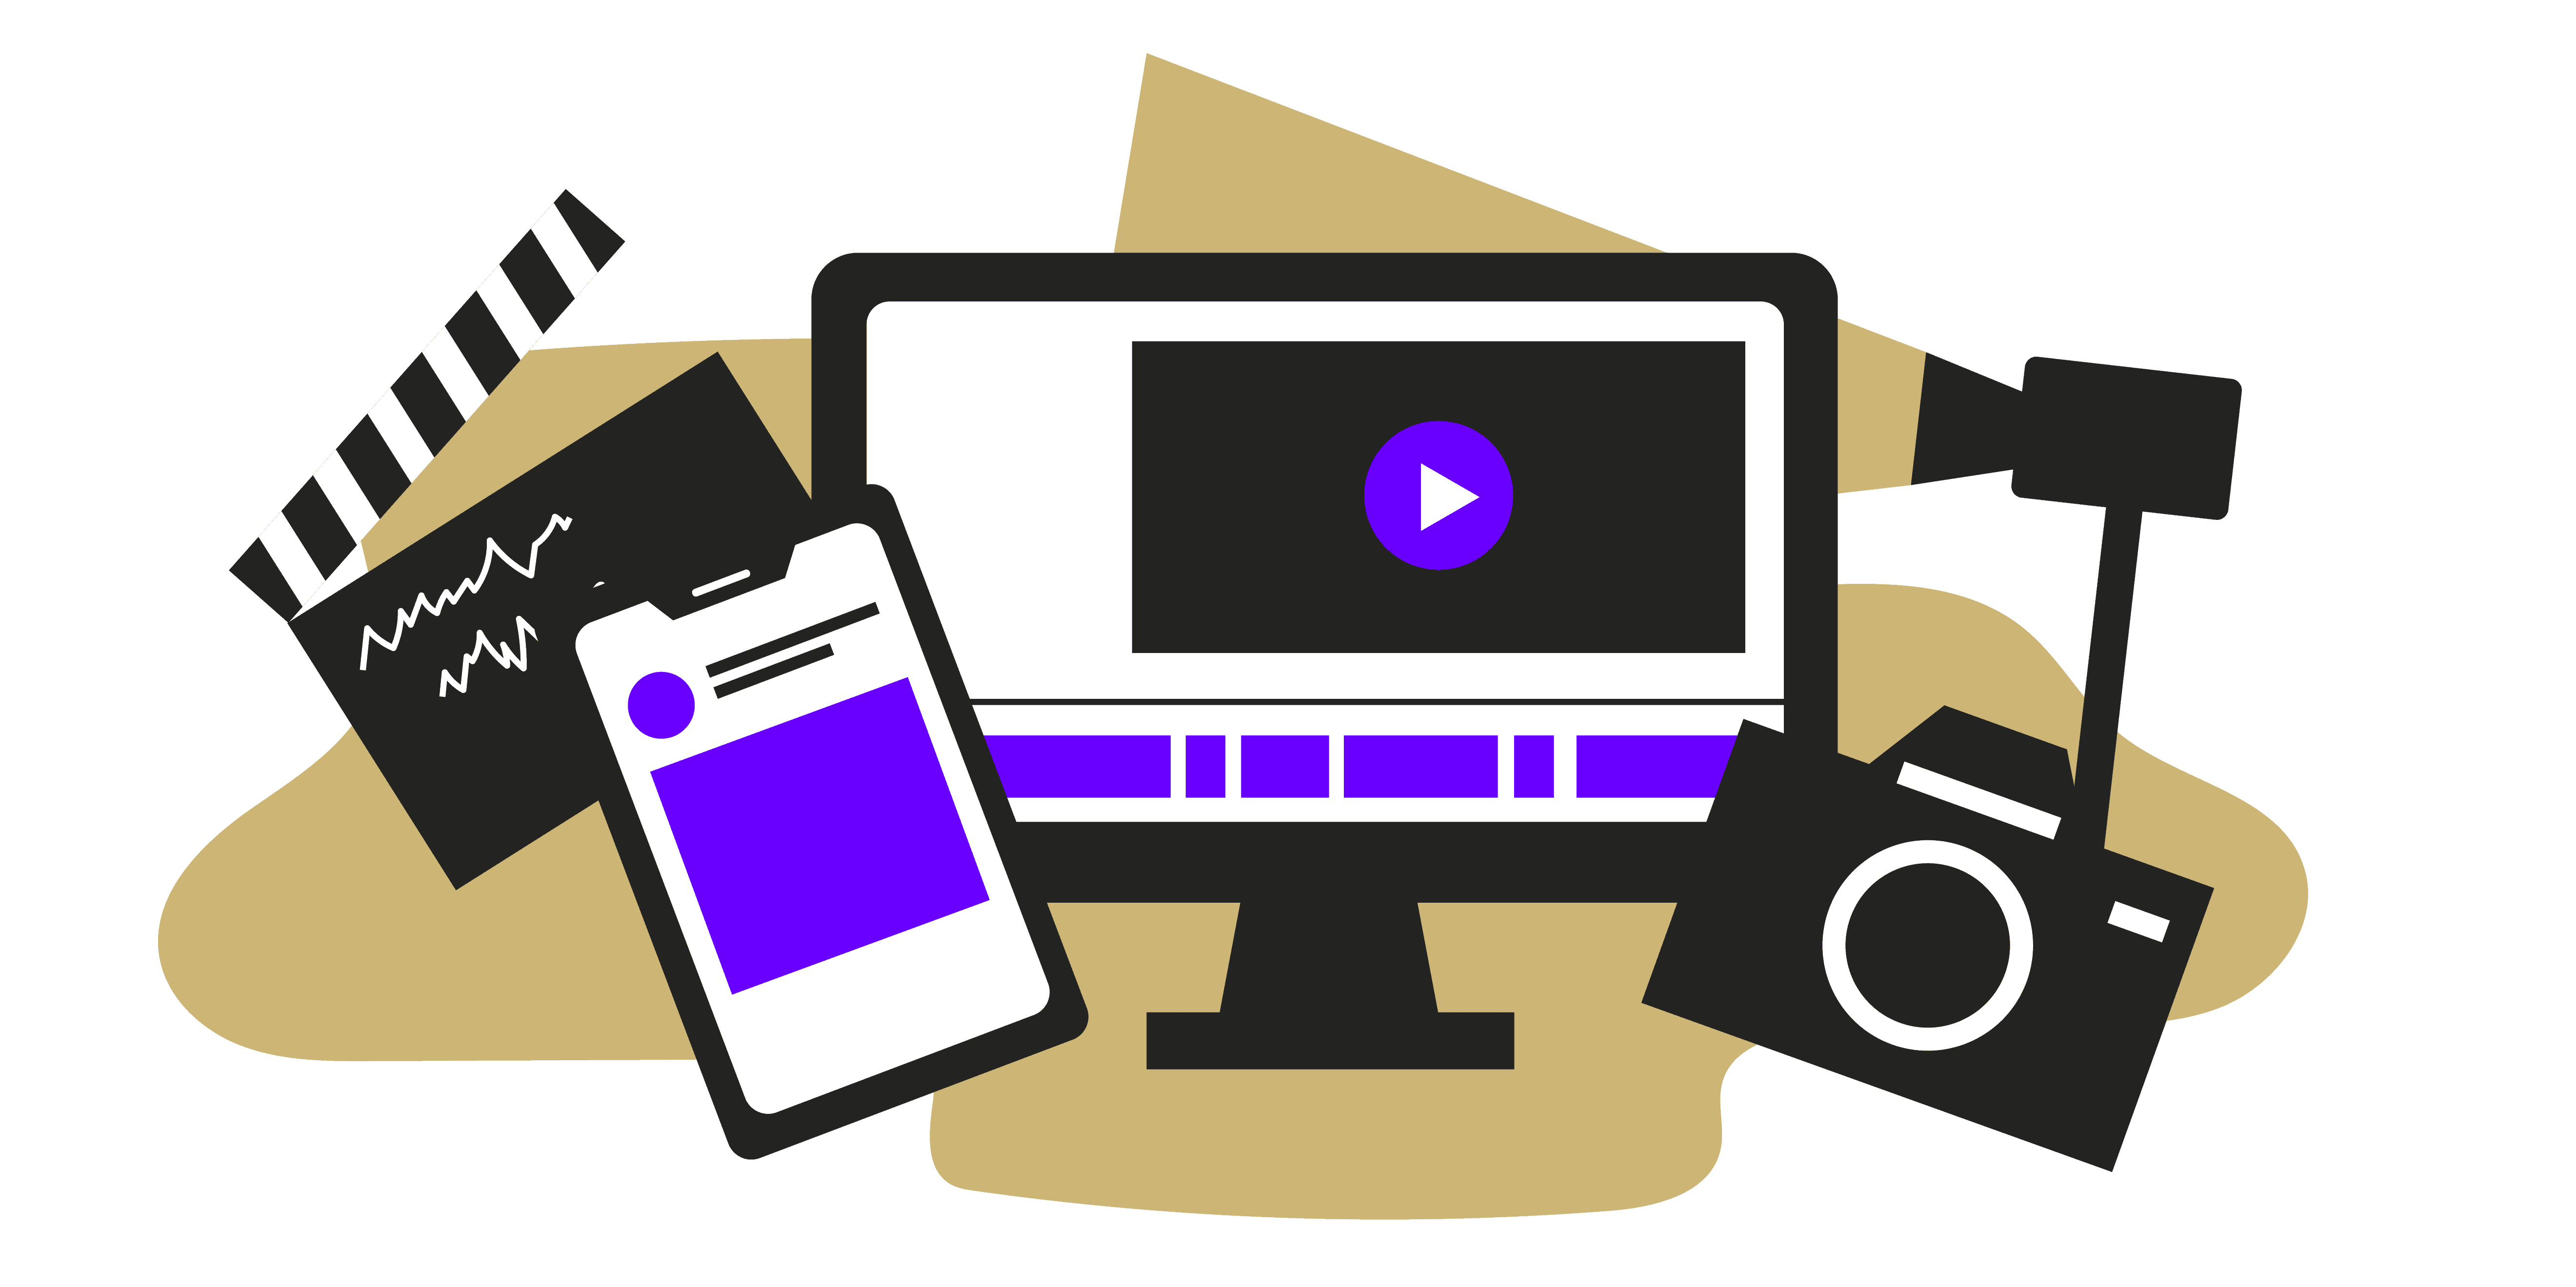 Create a video